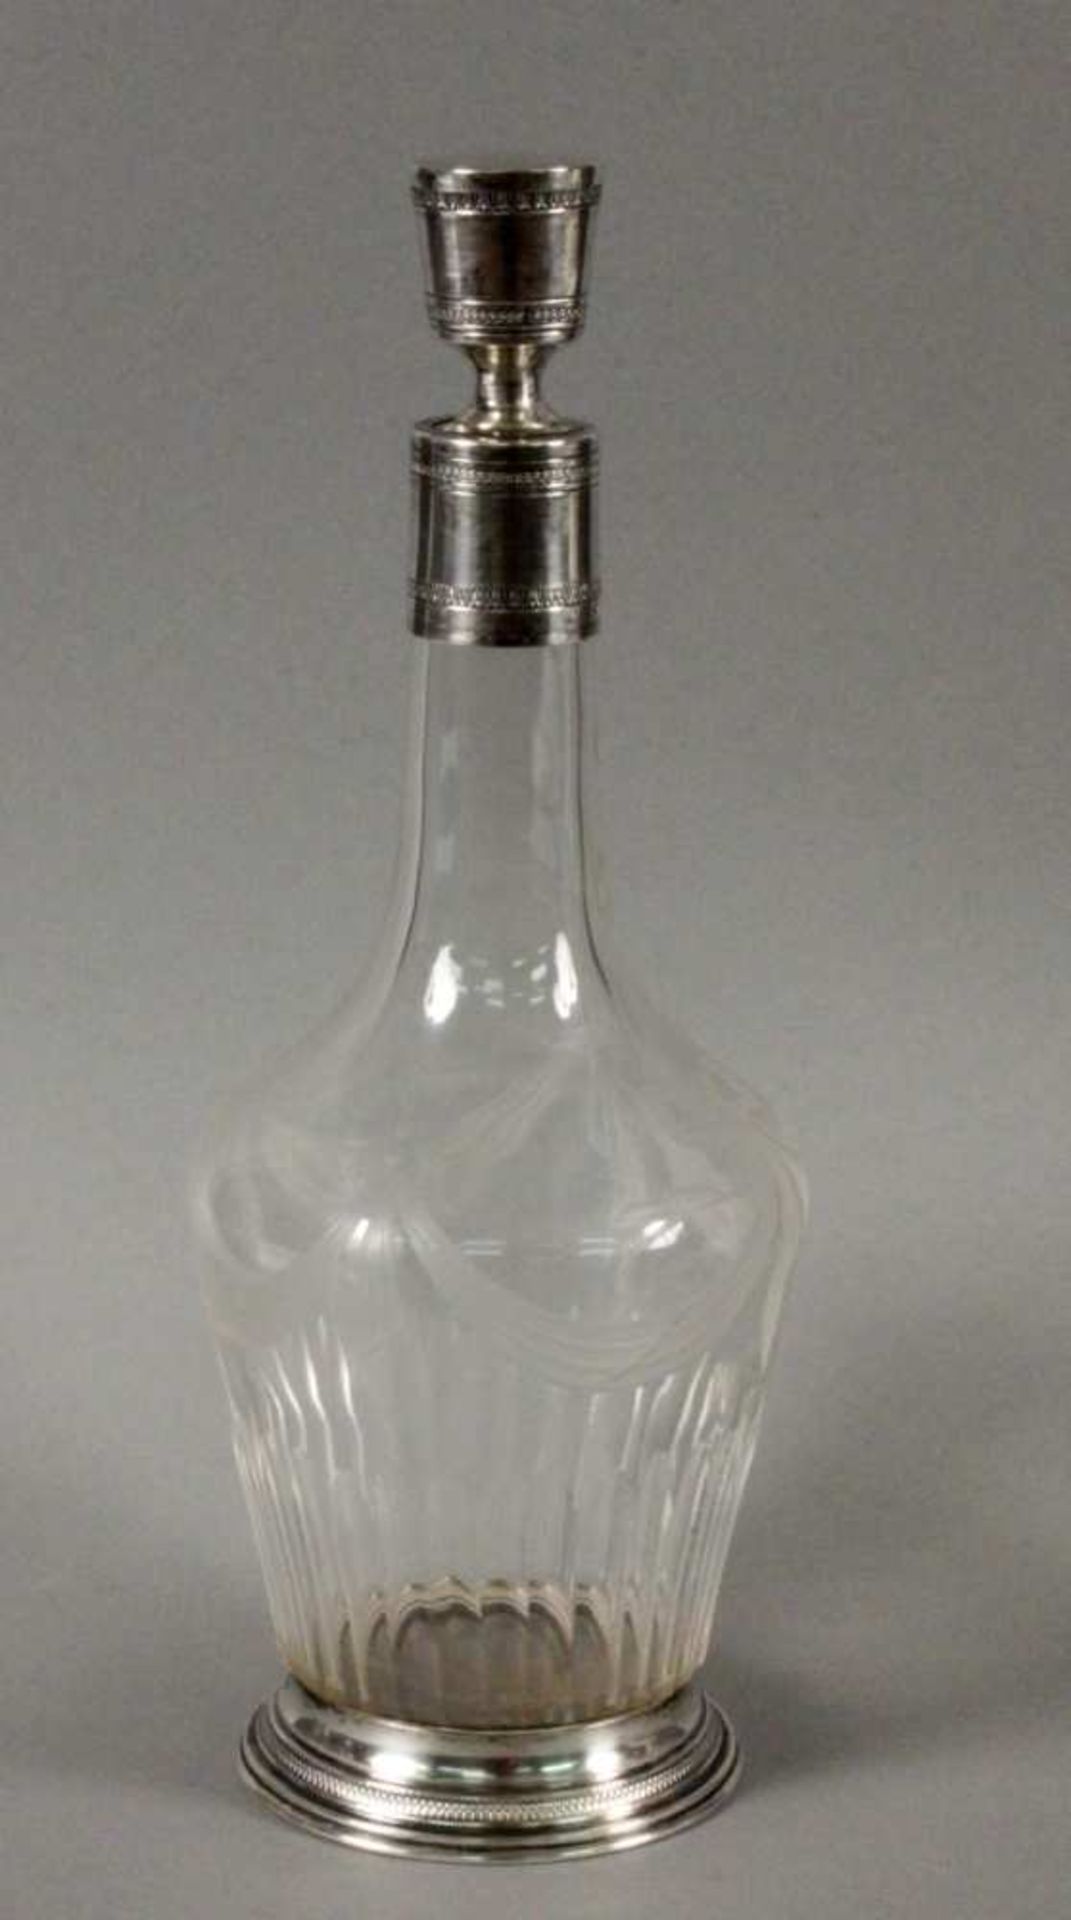 KARAFFE Frankreich um 1900 Geschliffenes Kristallglas mit Silbermontur. Gest. H.29,5cm A COGNAC - Bild 2 aus 2